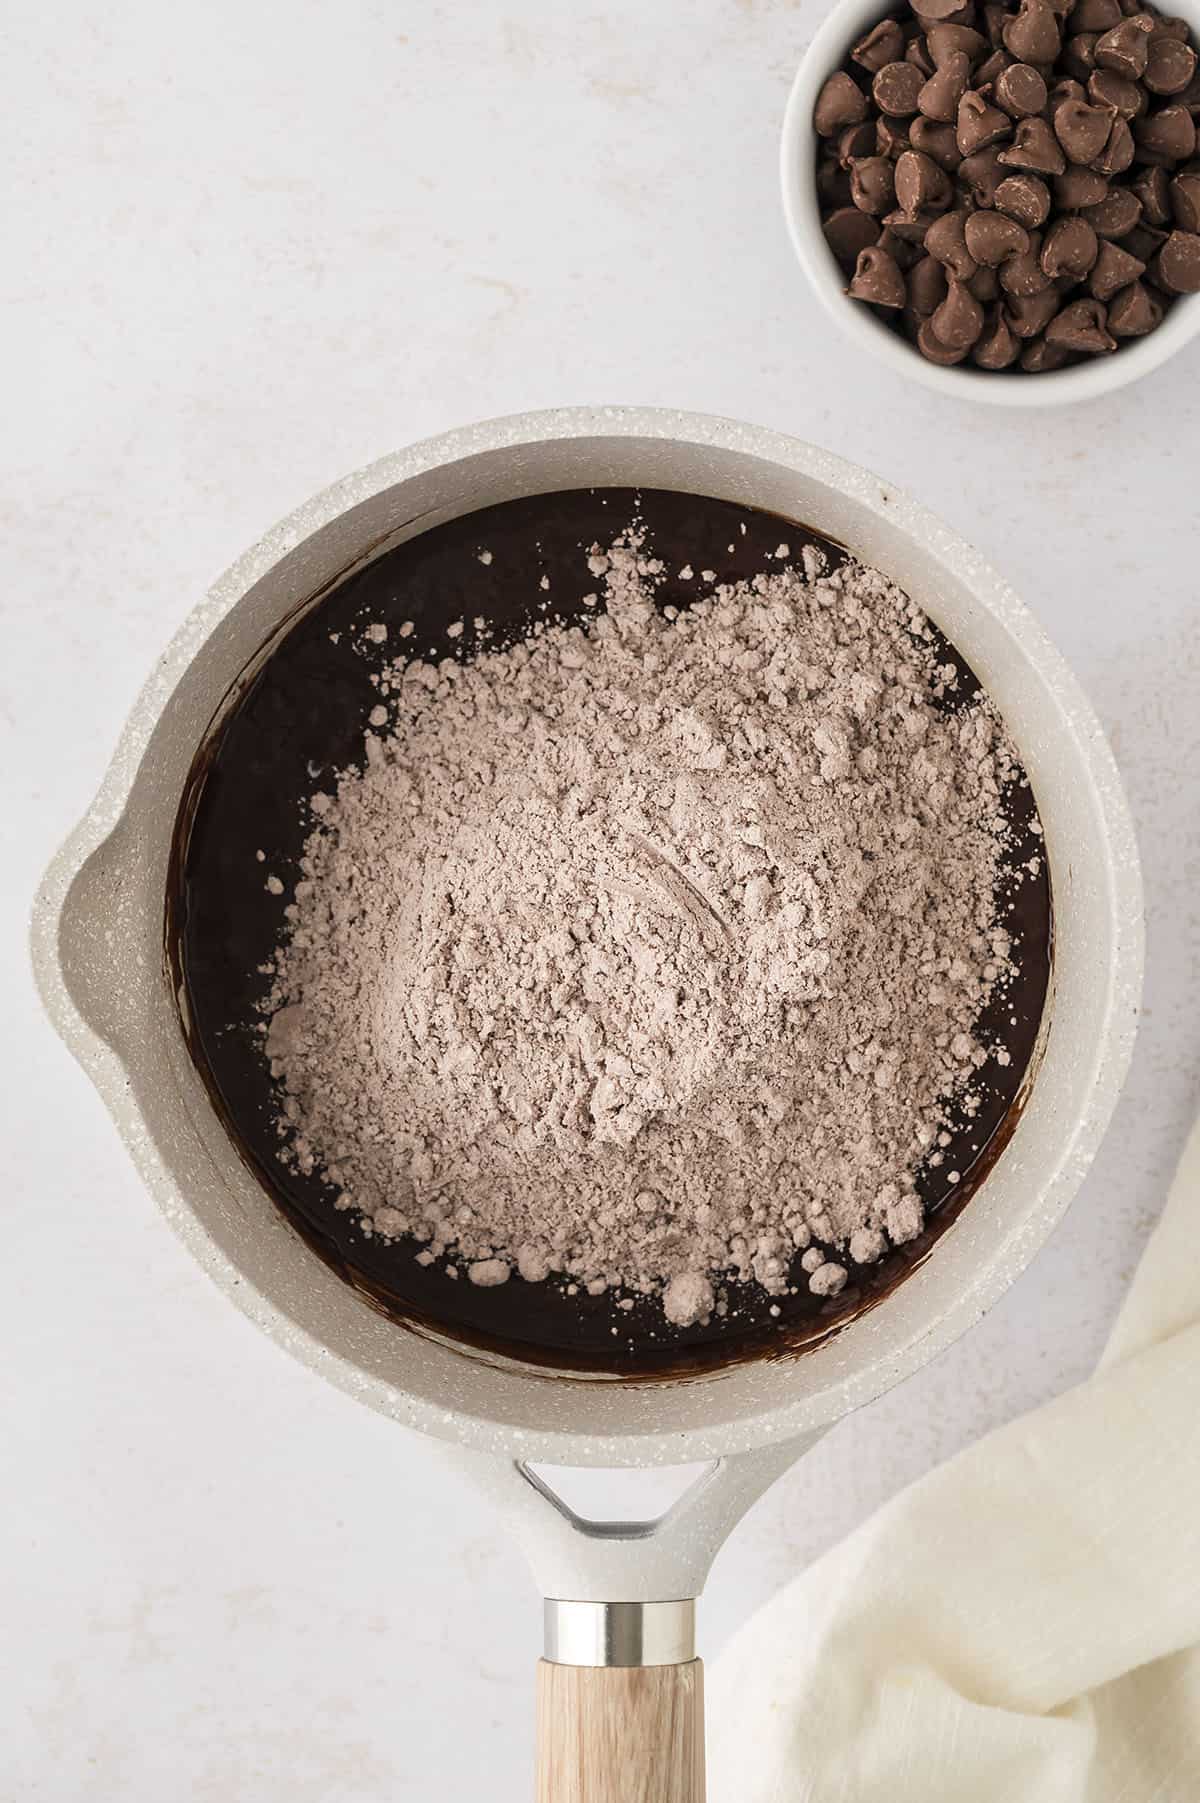 Brownie batter in pan.